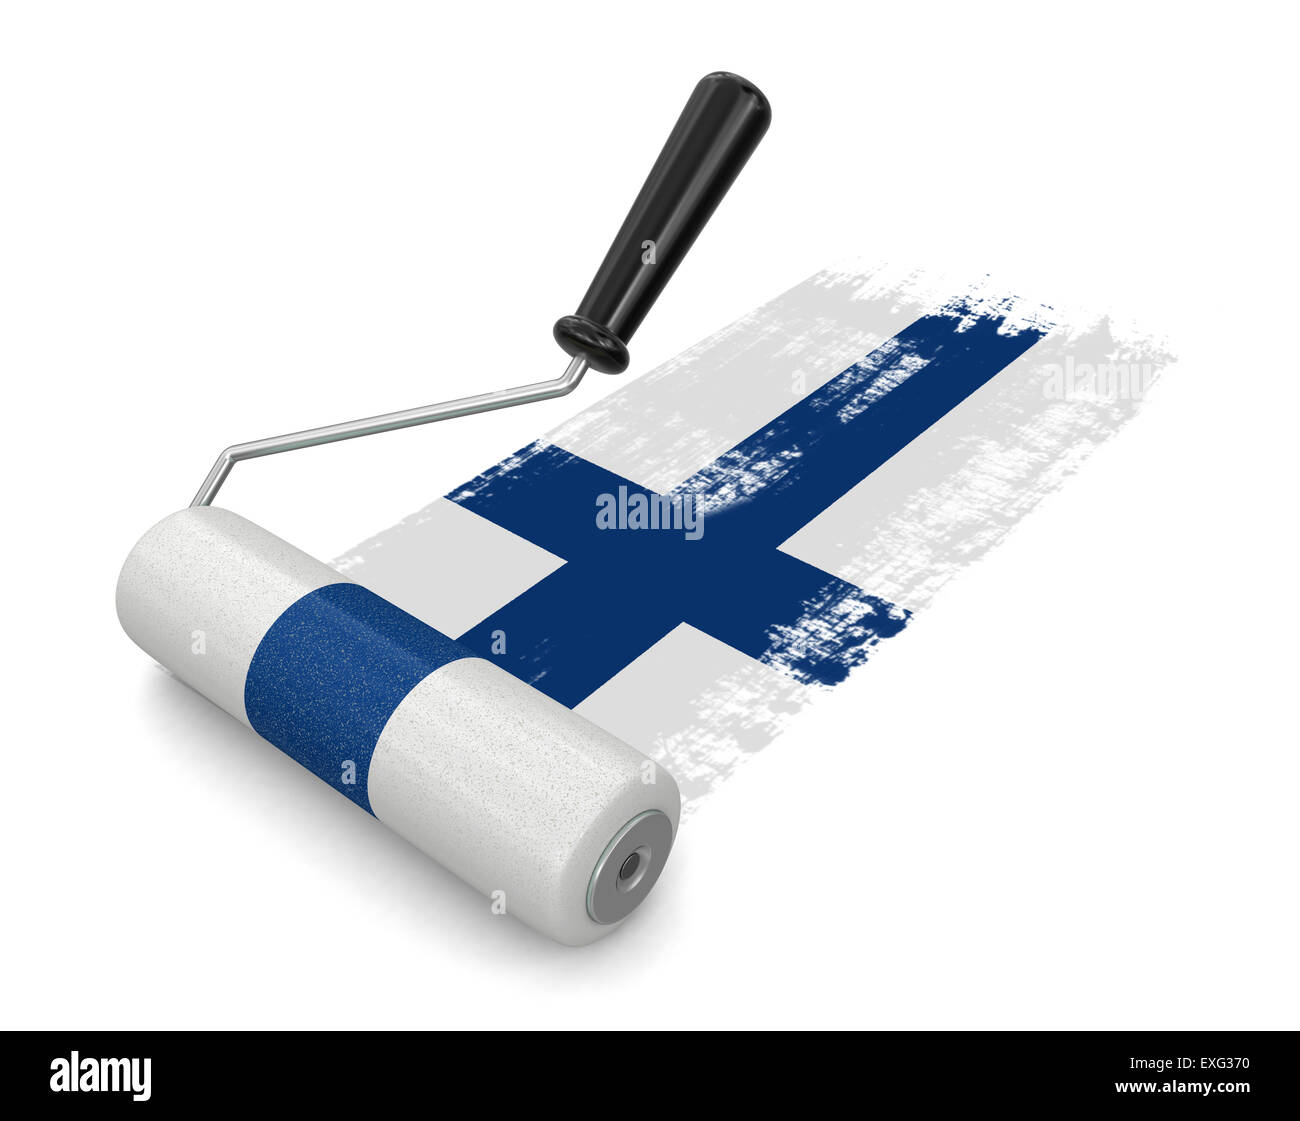 Farbroller mit Finnische Flagge (Clipping-Pfad enthalten) Stockfoto